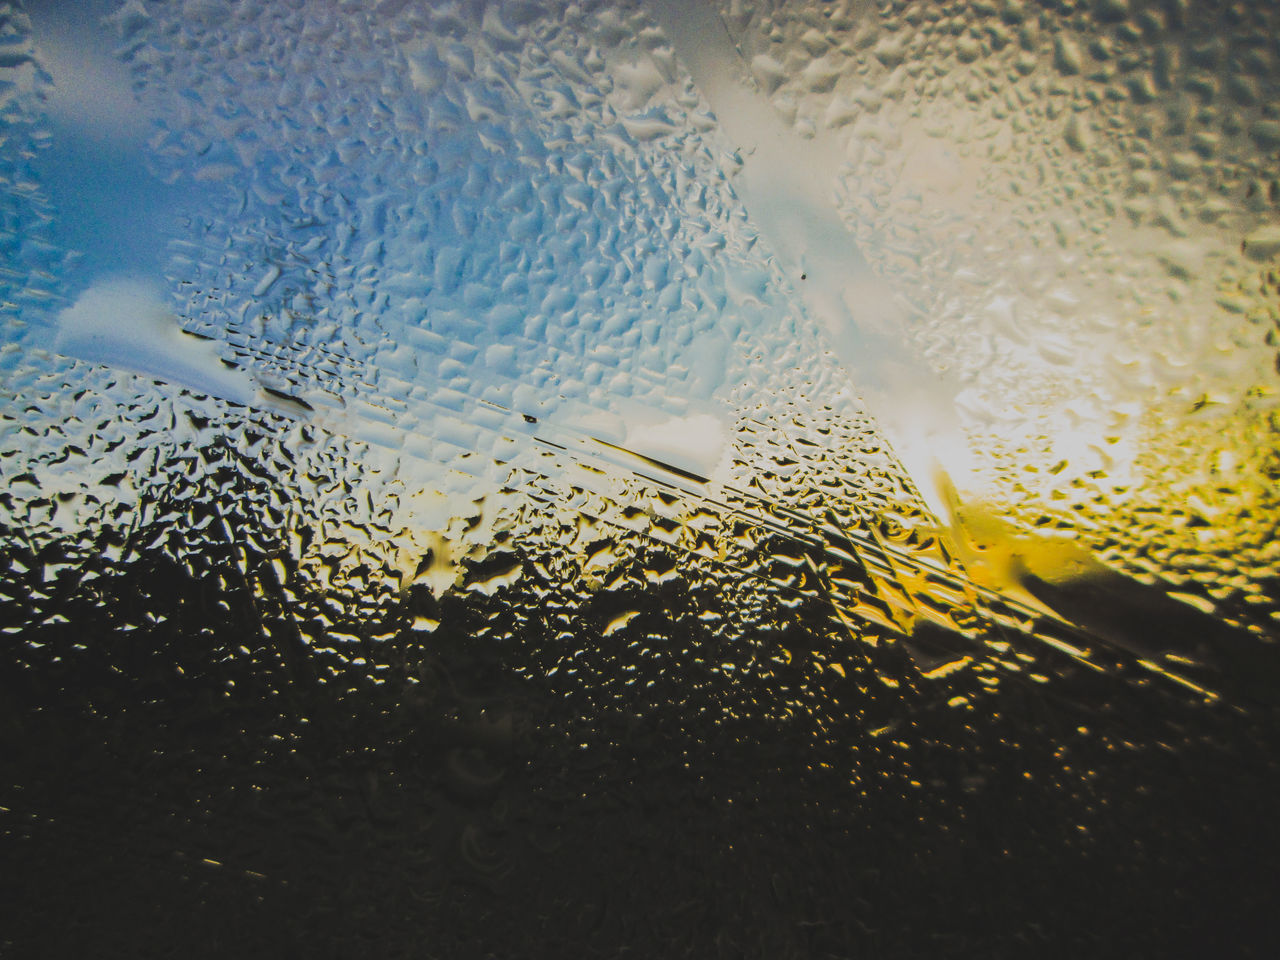 WATER DROPS ON GLASS WINDOW